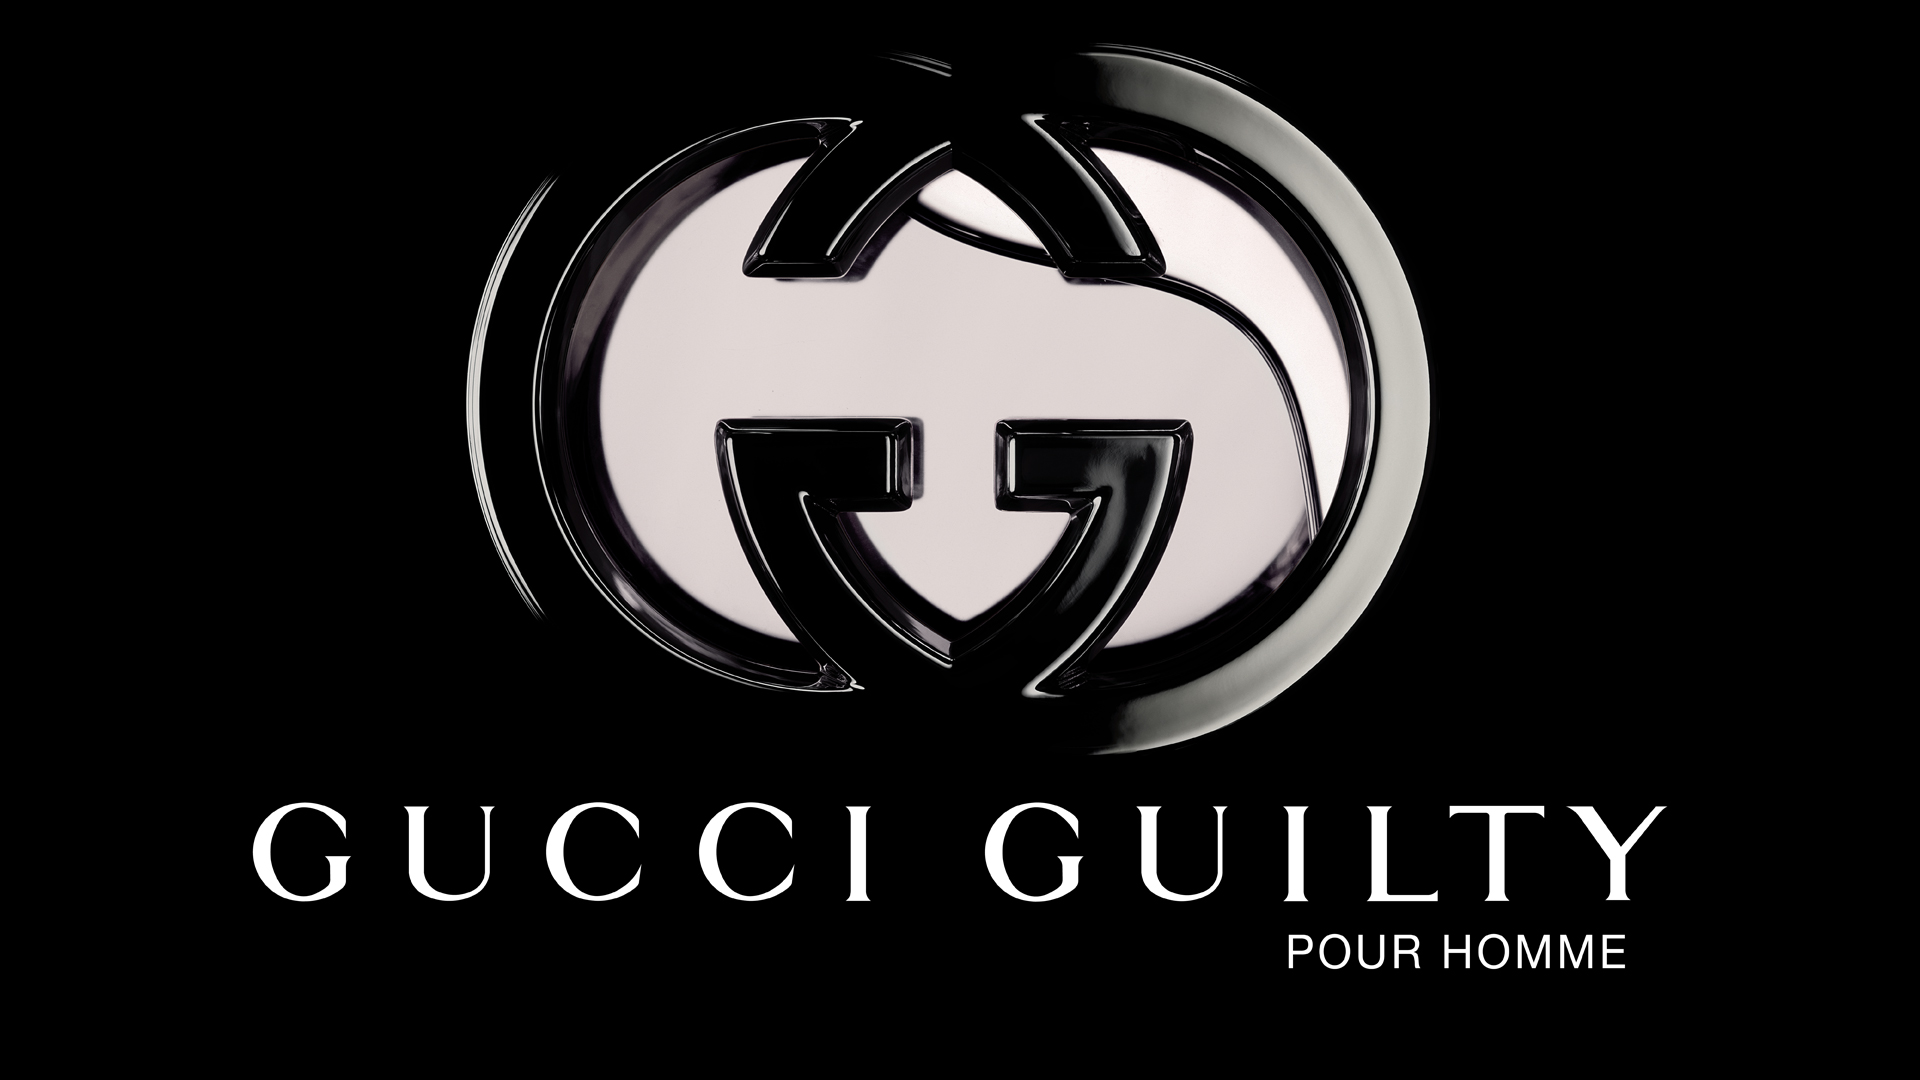 Hình ảnh logo Gucci nền đen